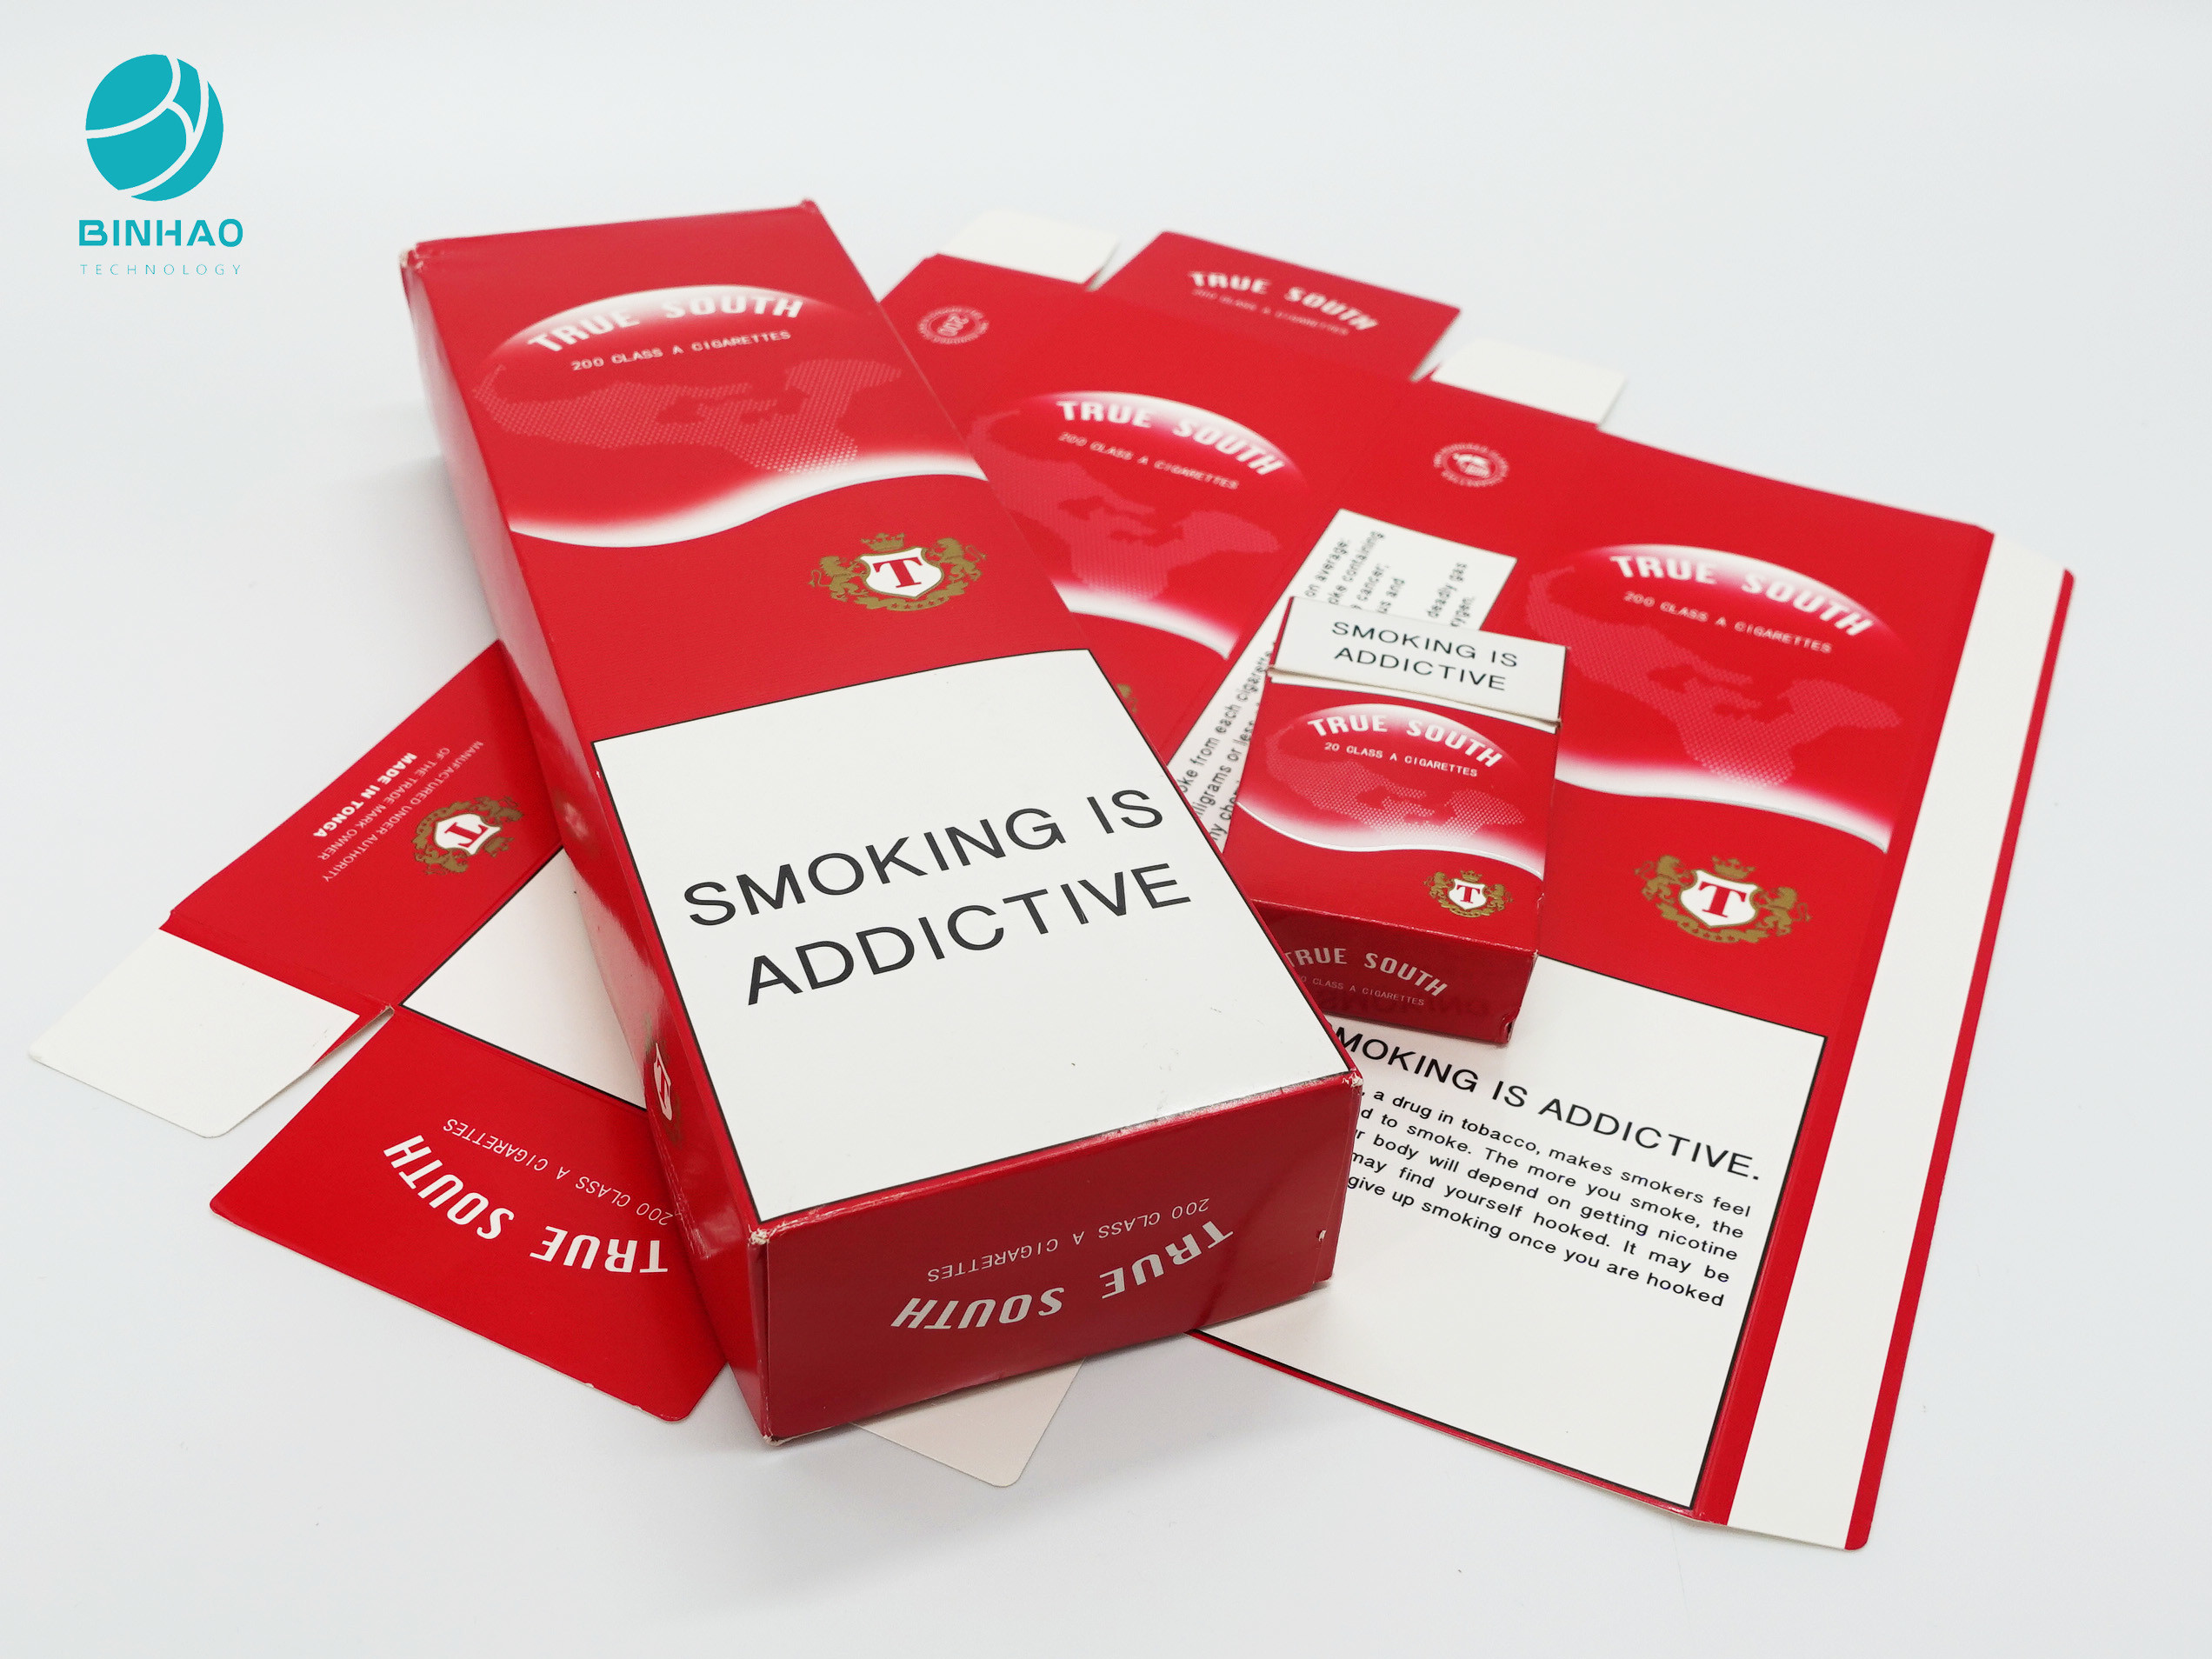 جعبه محصولات مقوایی بسته بندی سیگار یکبار مصرف با طراحی شخصی